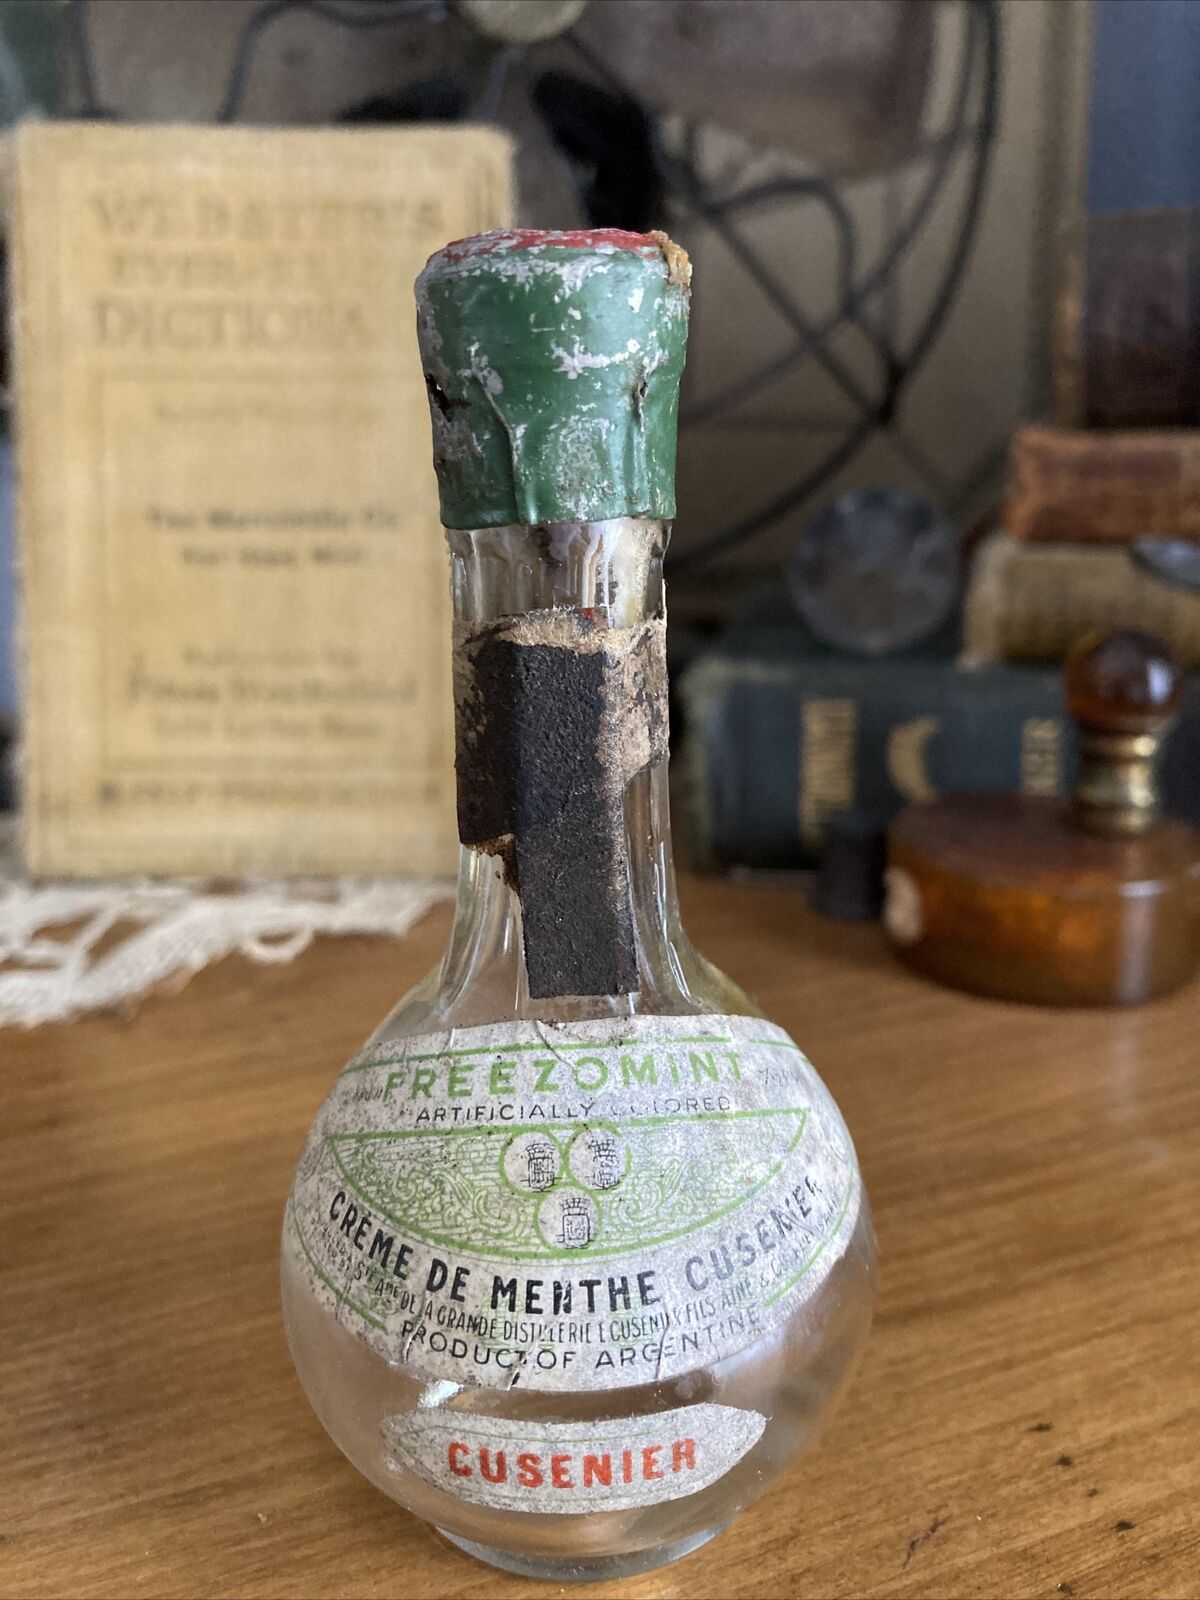 Vintage 1930'S Creme de Menthe Cusenier Miniature Liquor Bottle RARE EMPTY